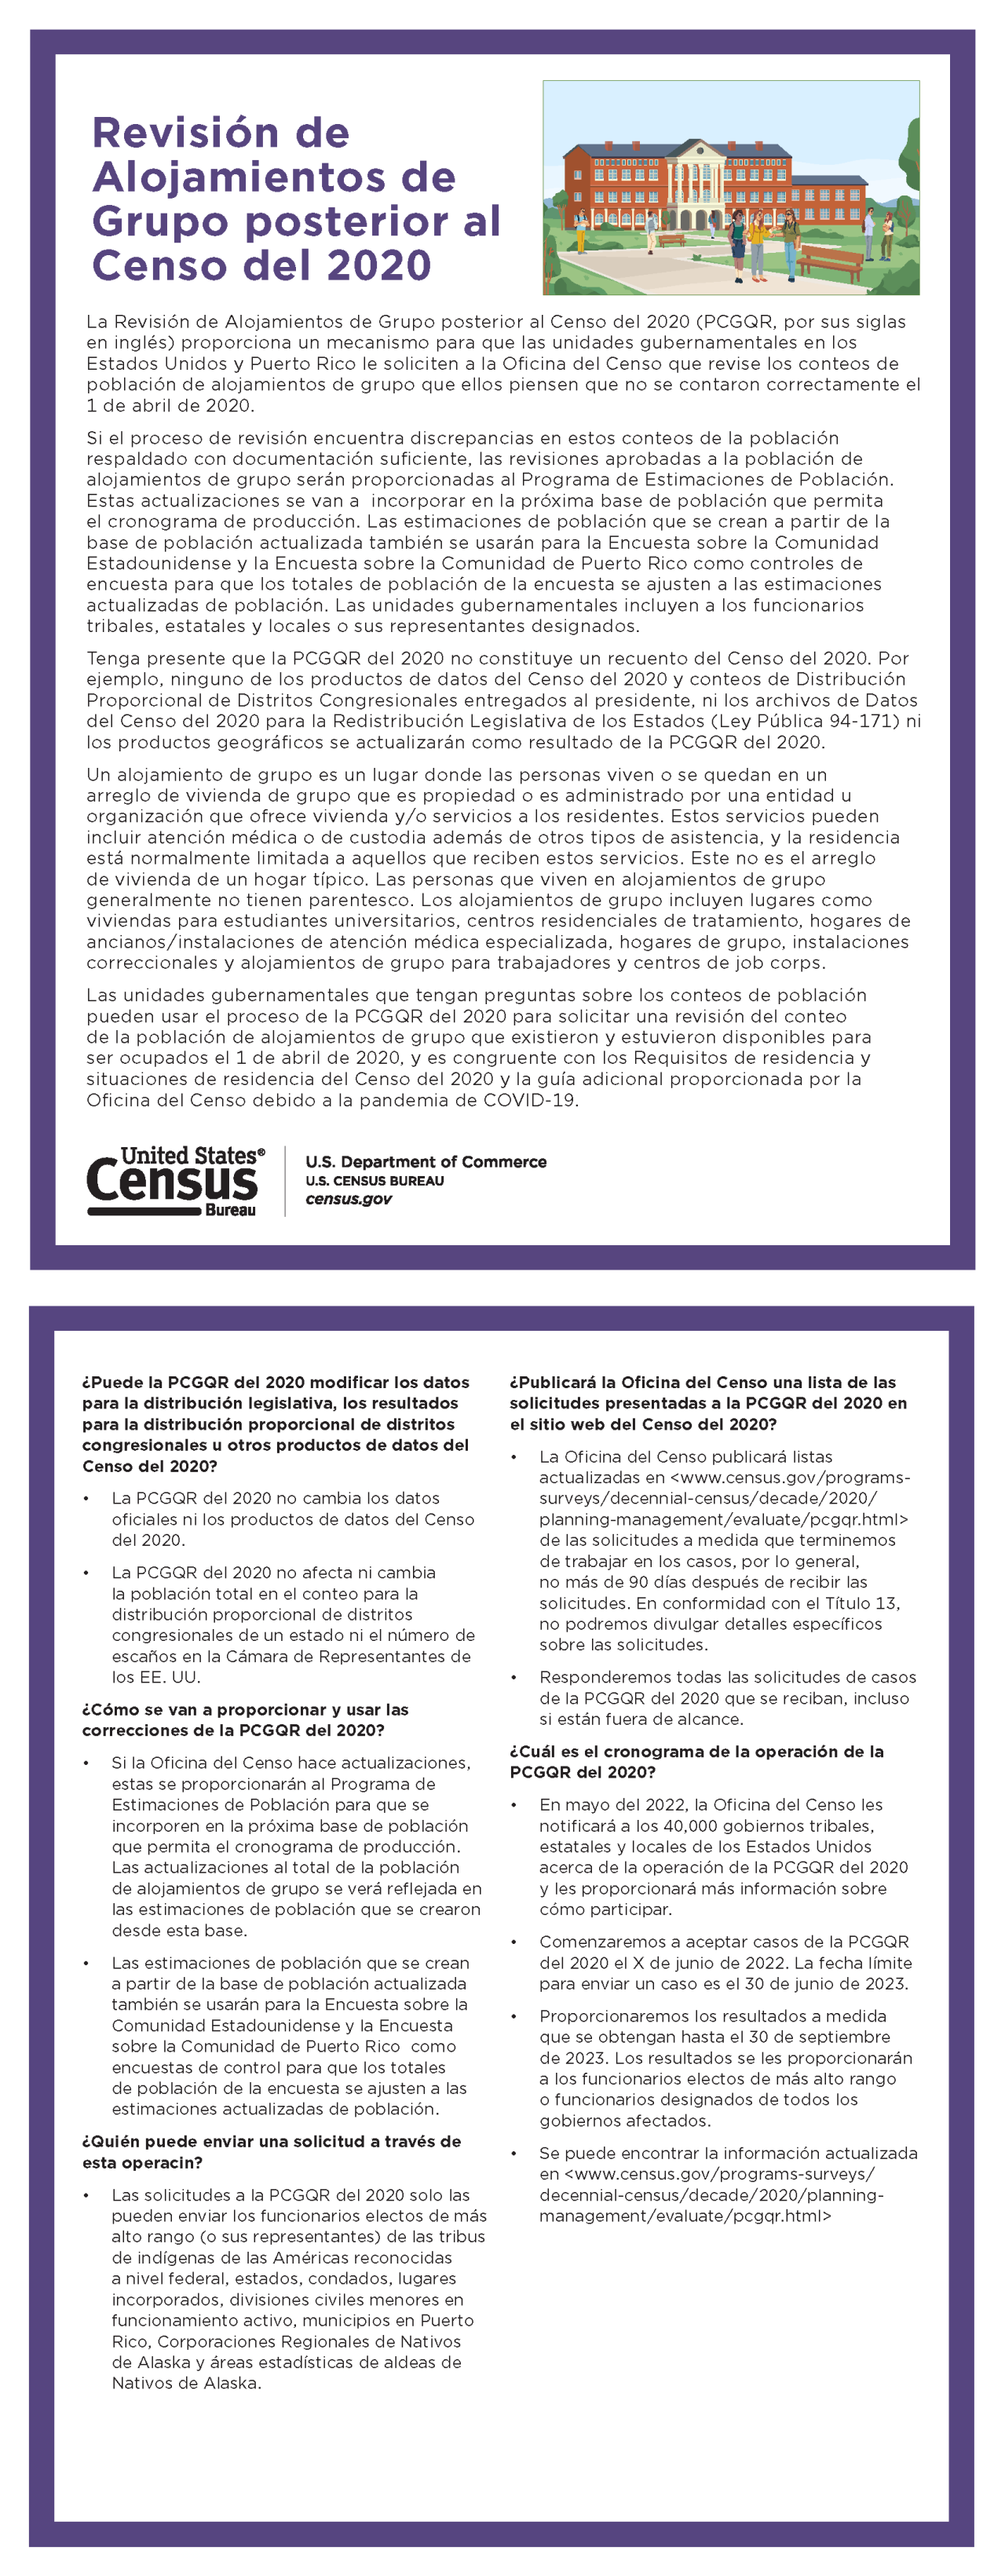 Revision de Alojamientos de Grupo posterior al Censo del 2020